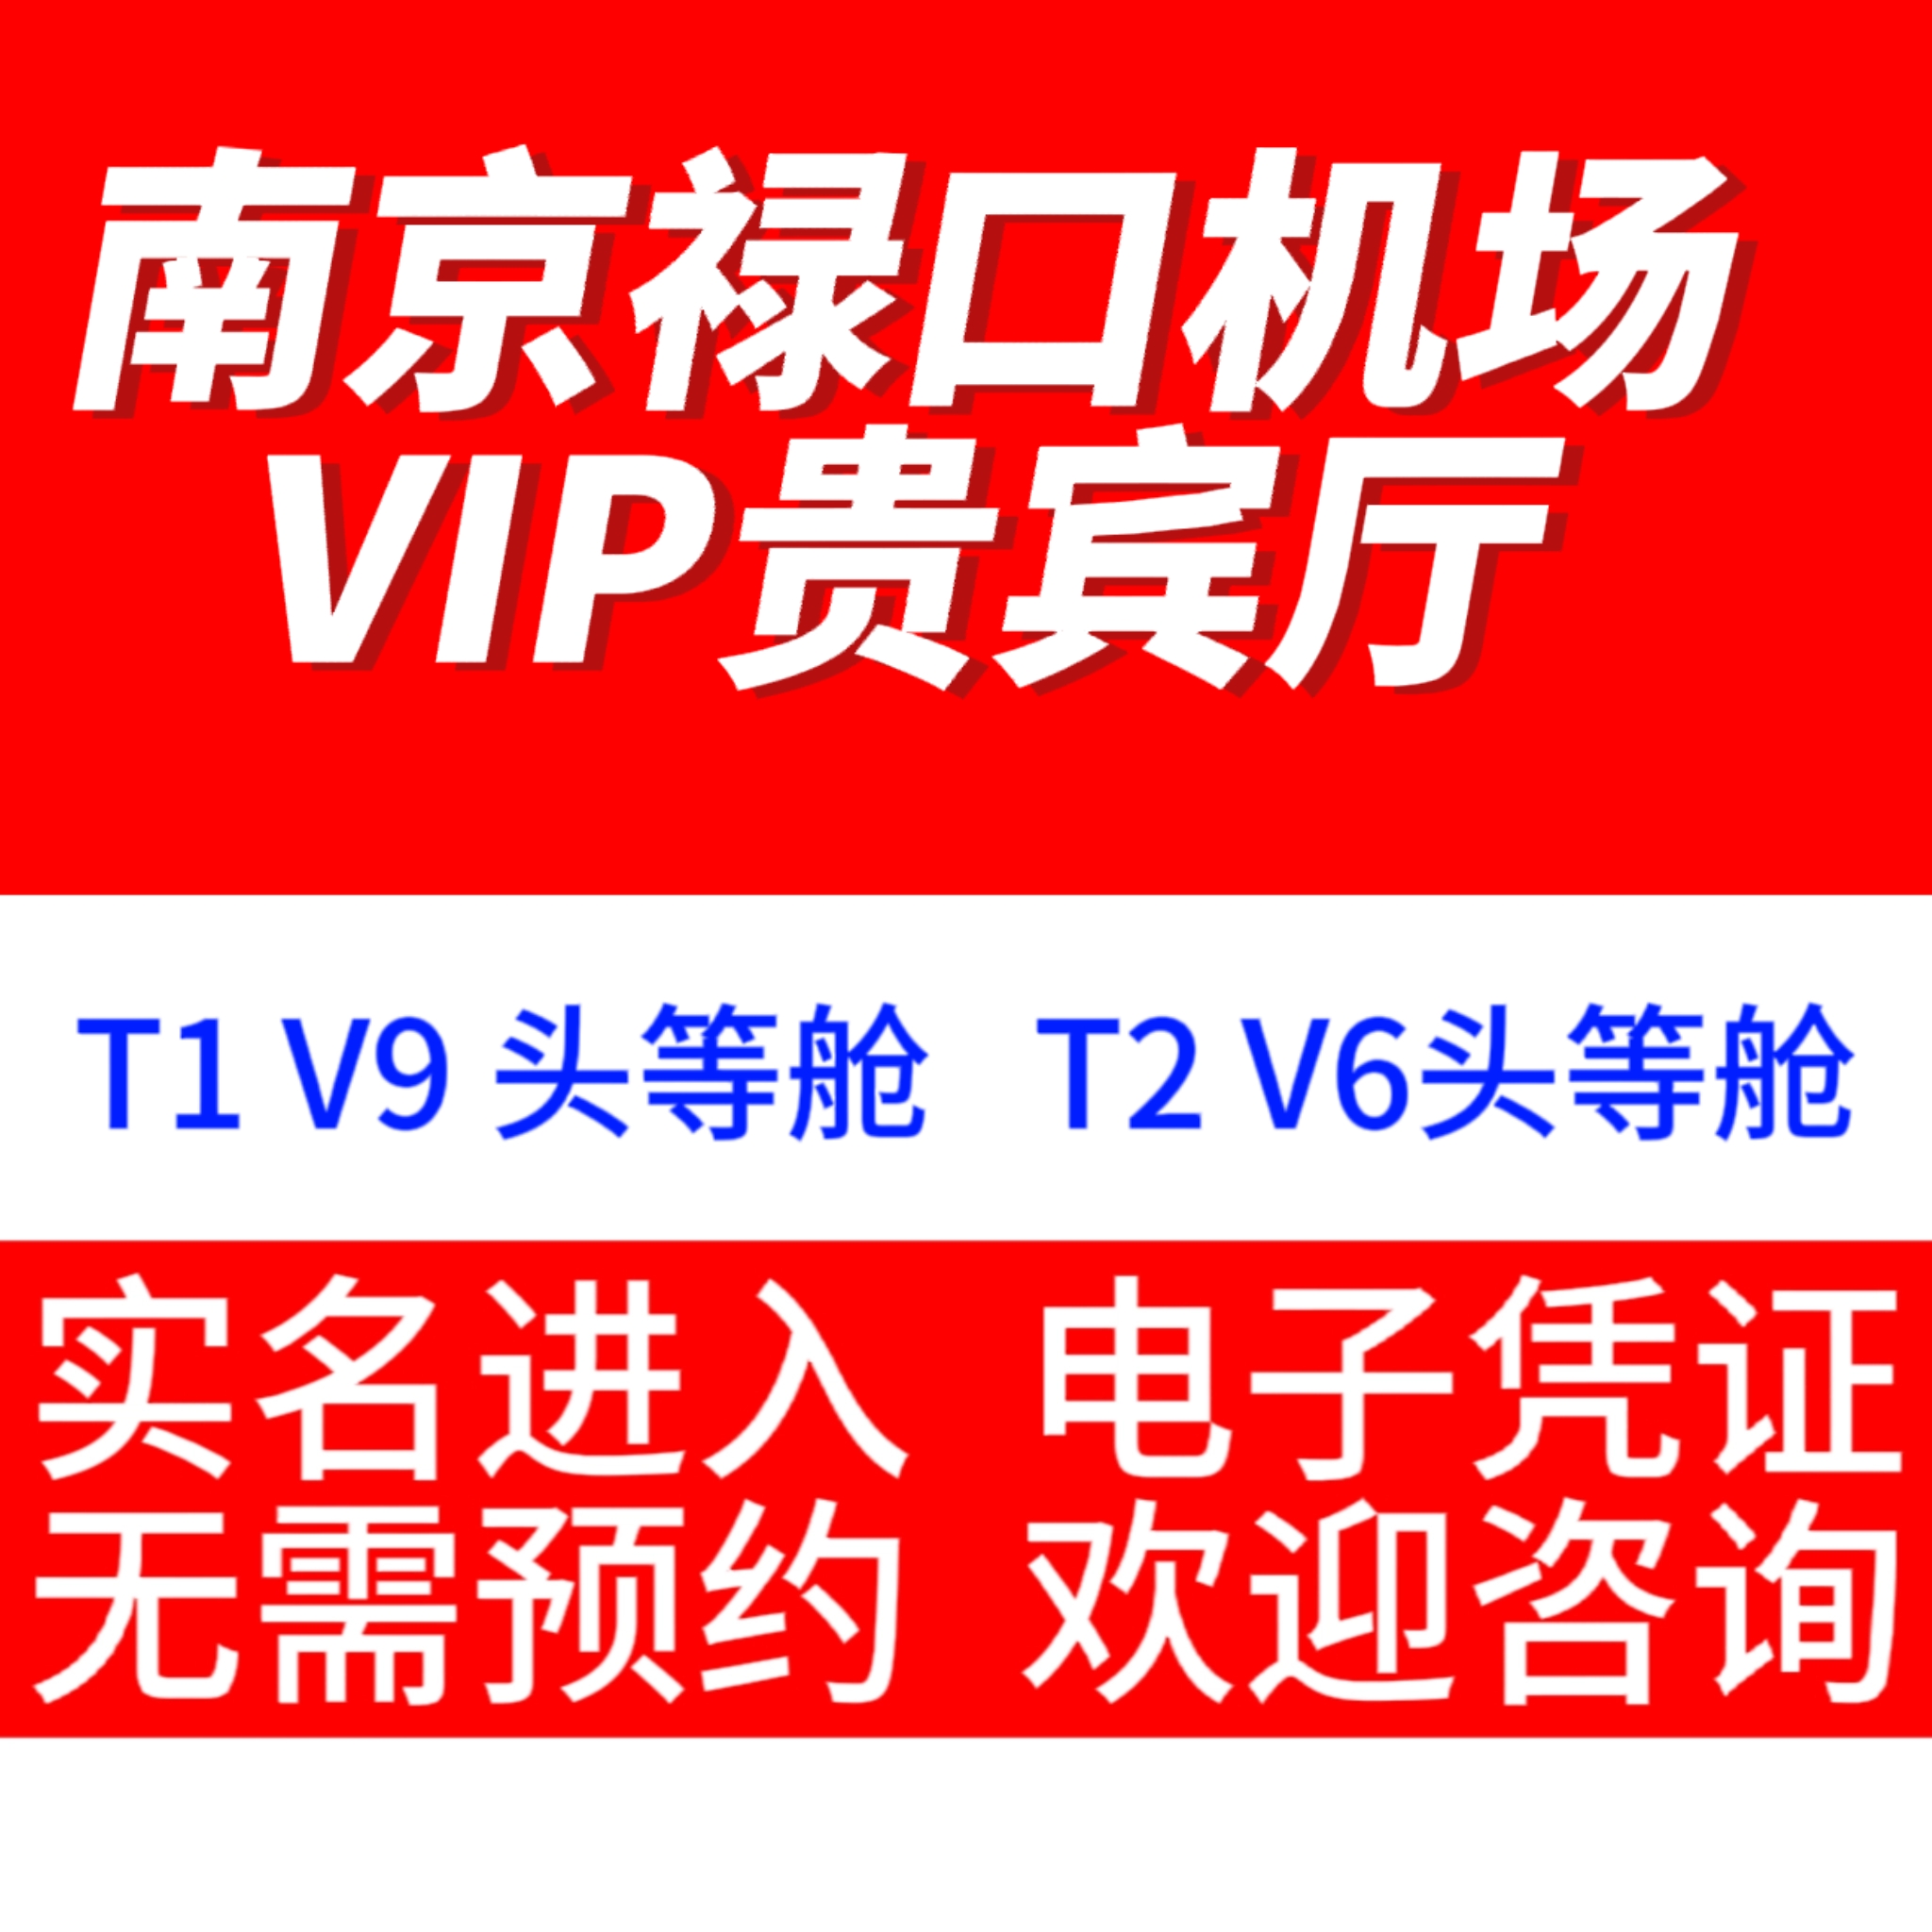 南京禄口机场v6/v9V7国际国内航班南京禄口机场贵宾厅VIP休息室